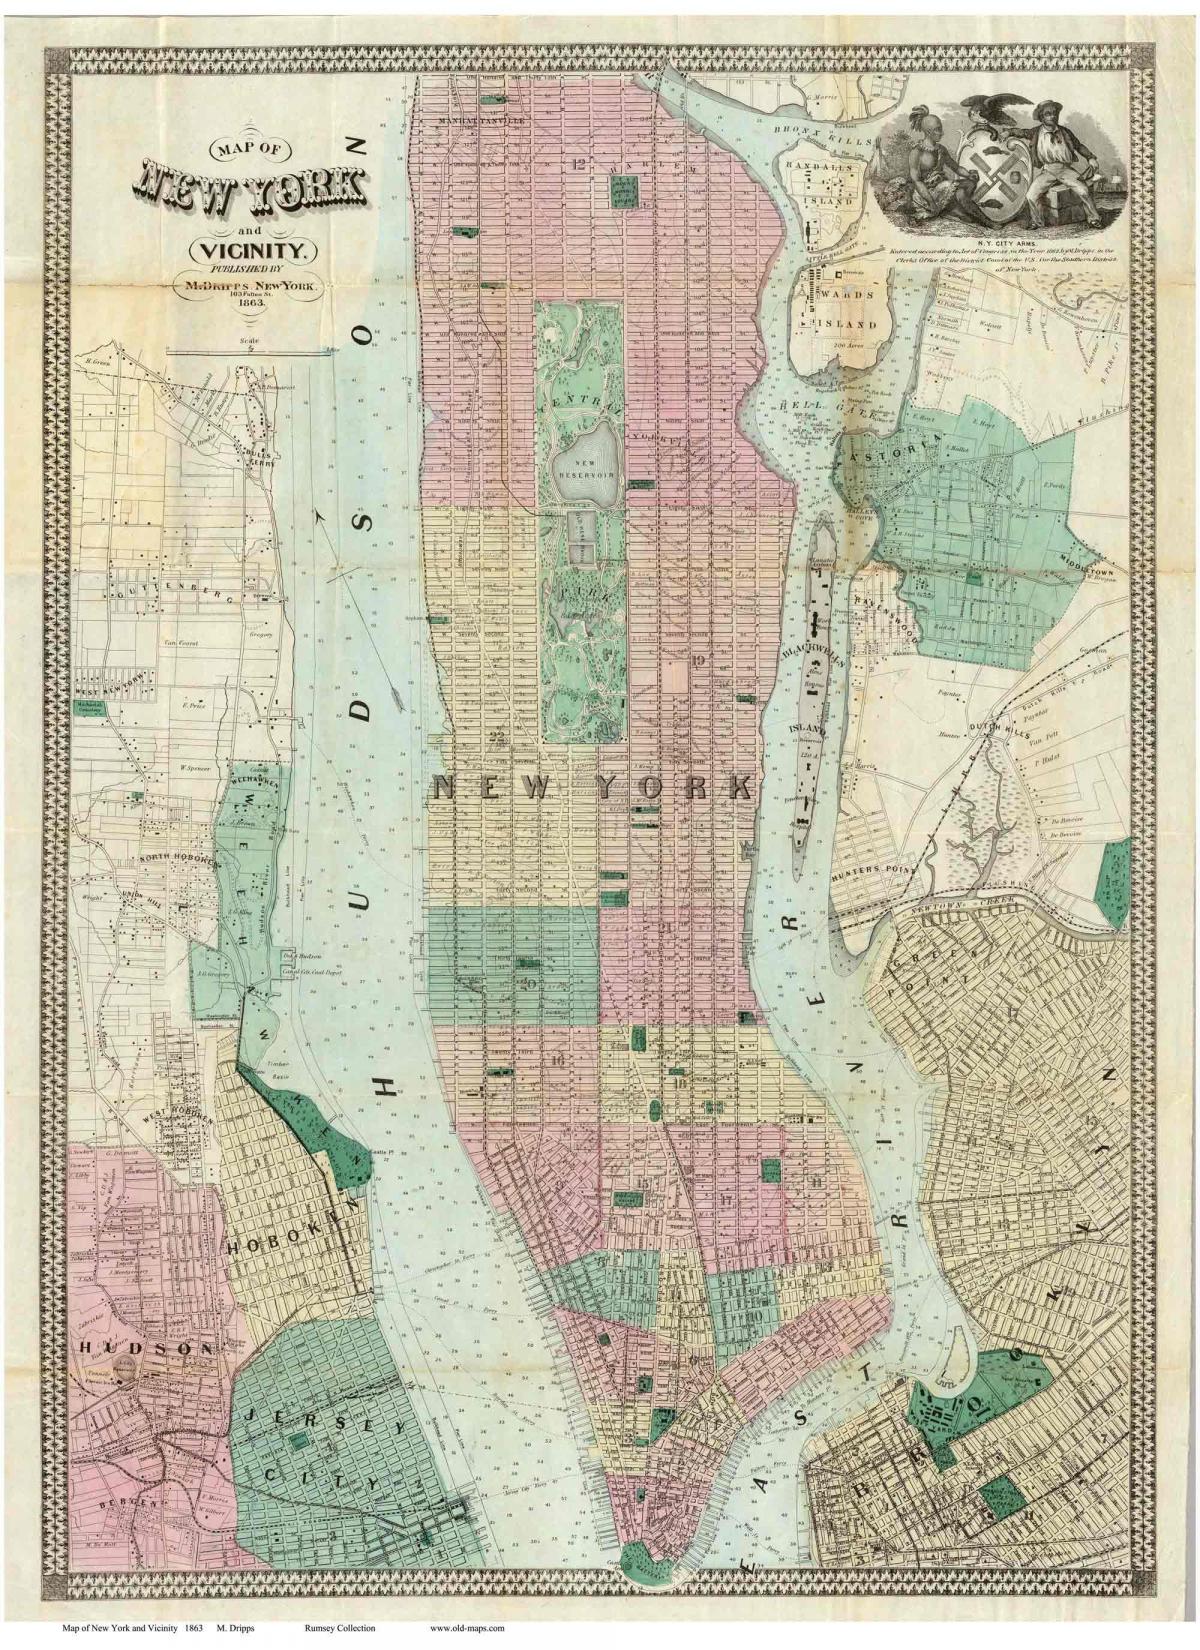 Historische kaart van Manhattan